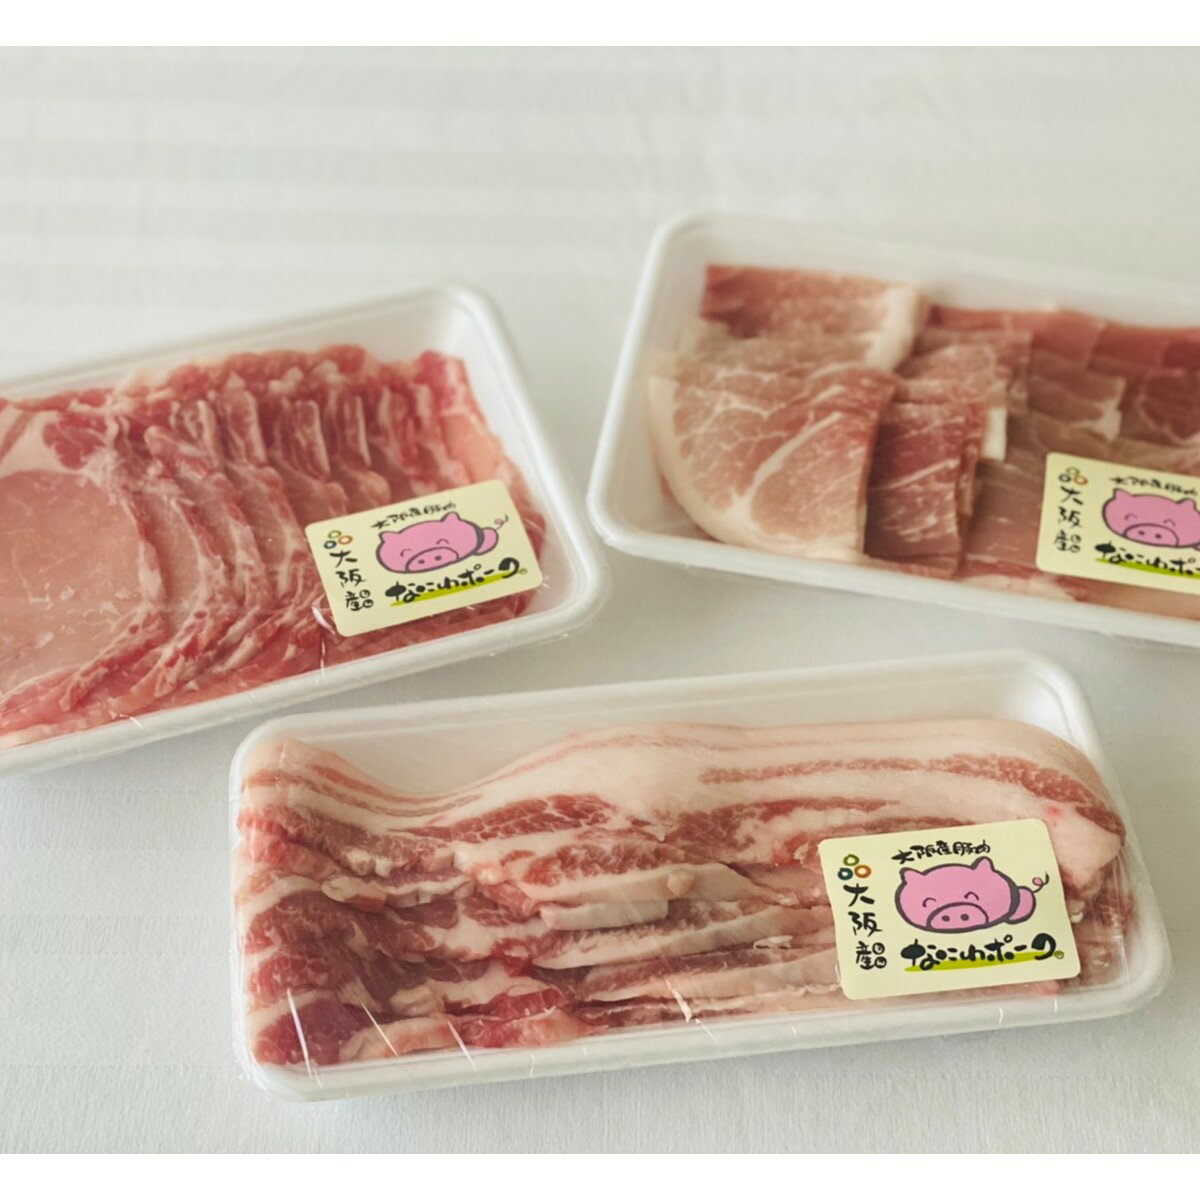 大阪産ブランド豚「なにわポーク」の焼き肉セット